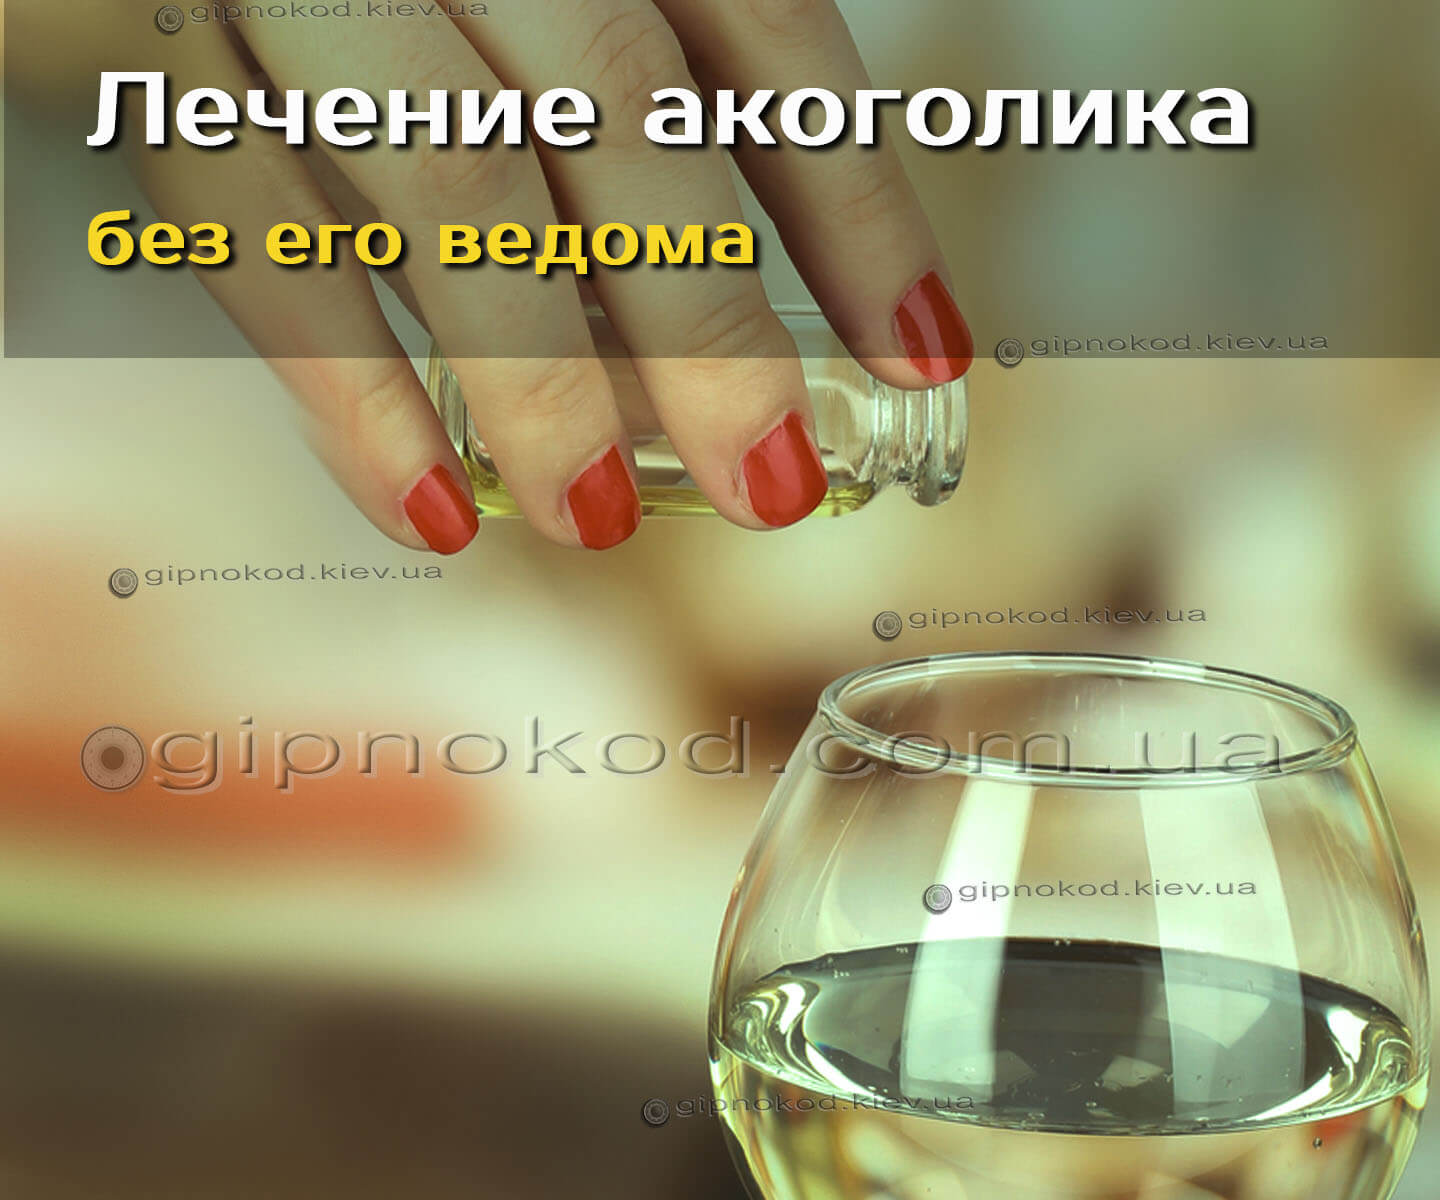 Медикаментозное лечение алкоголизма в домашних условиях